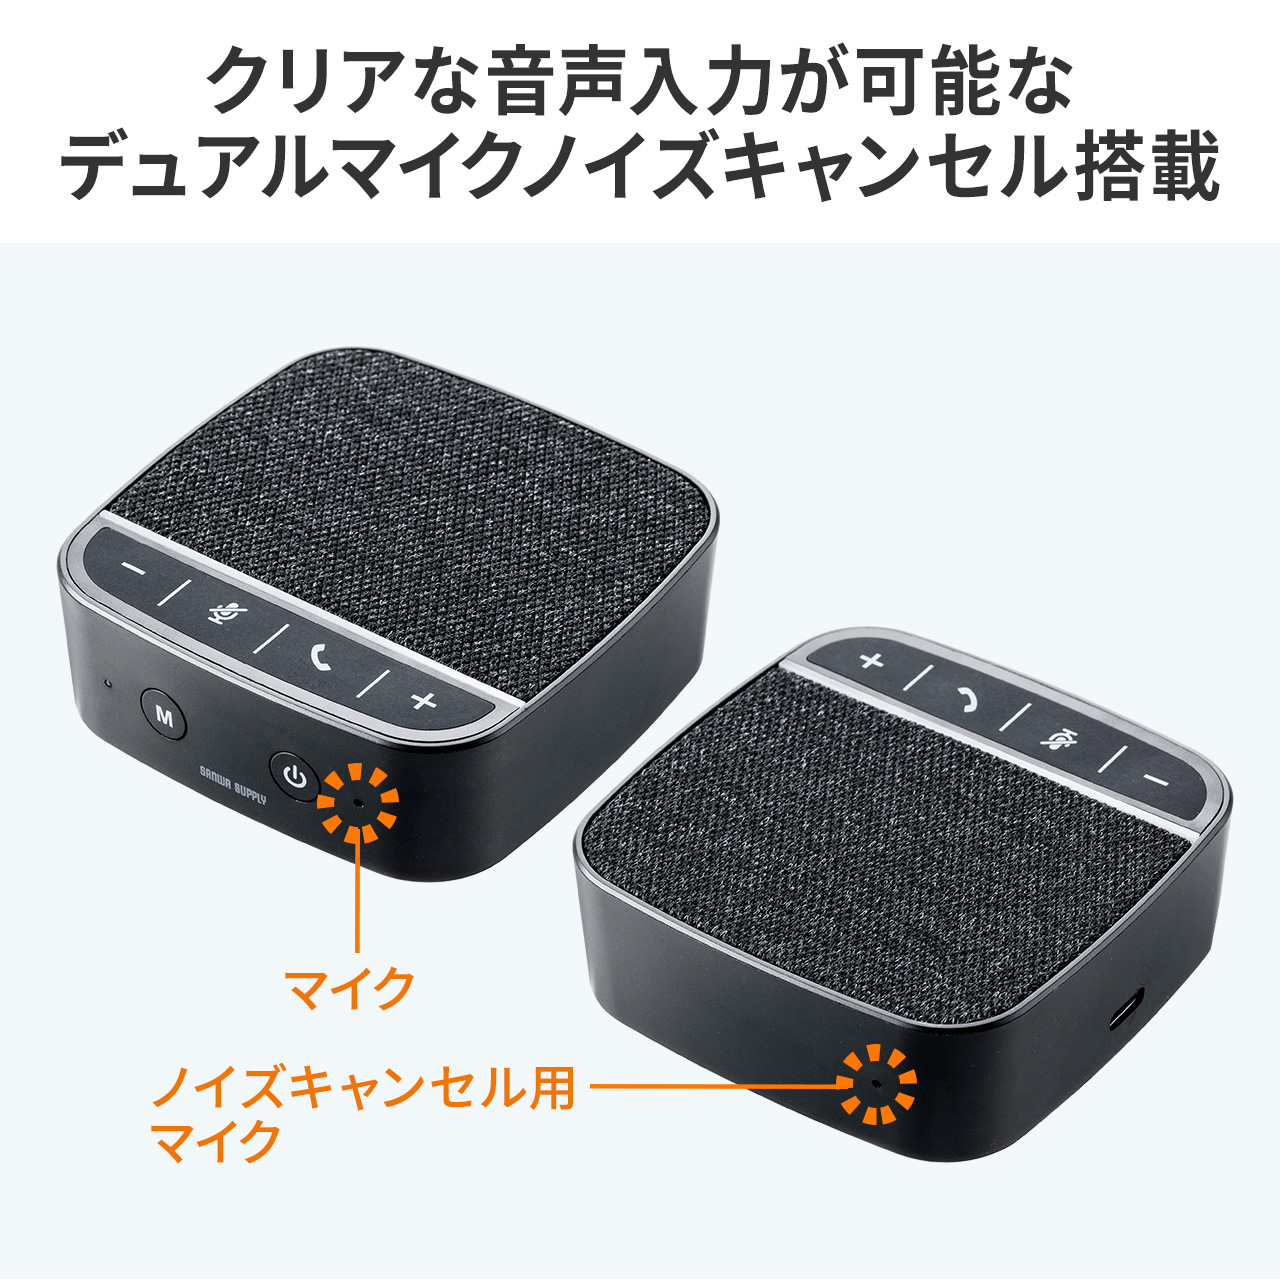 スピーカーフォン 小型 1人用 個人 360度全方向集音 全指向性 Bluetooth USB接続対応 WEB会議 個人向け ブラック USB Wndows Mac 400-BTMSP2